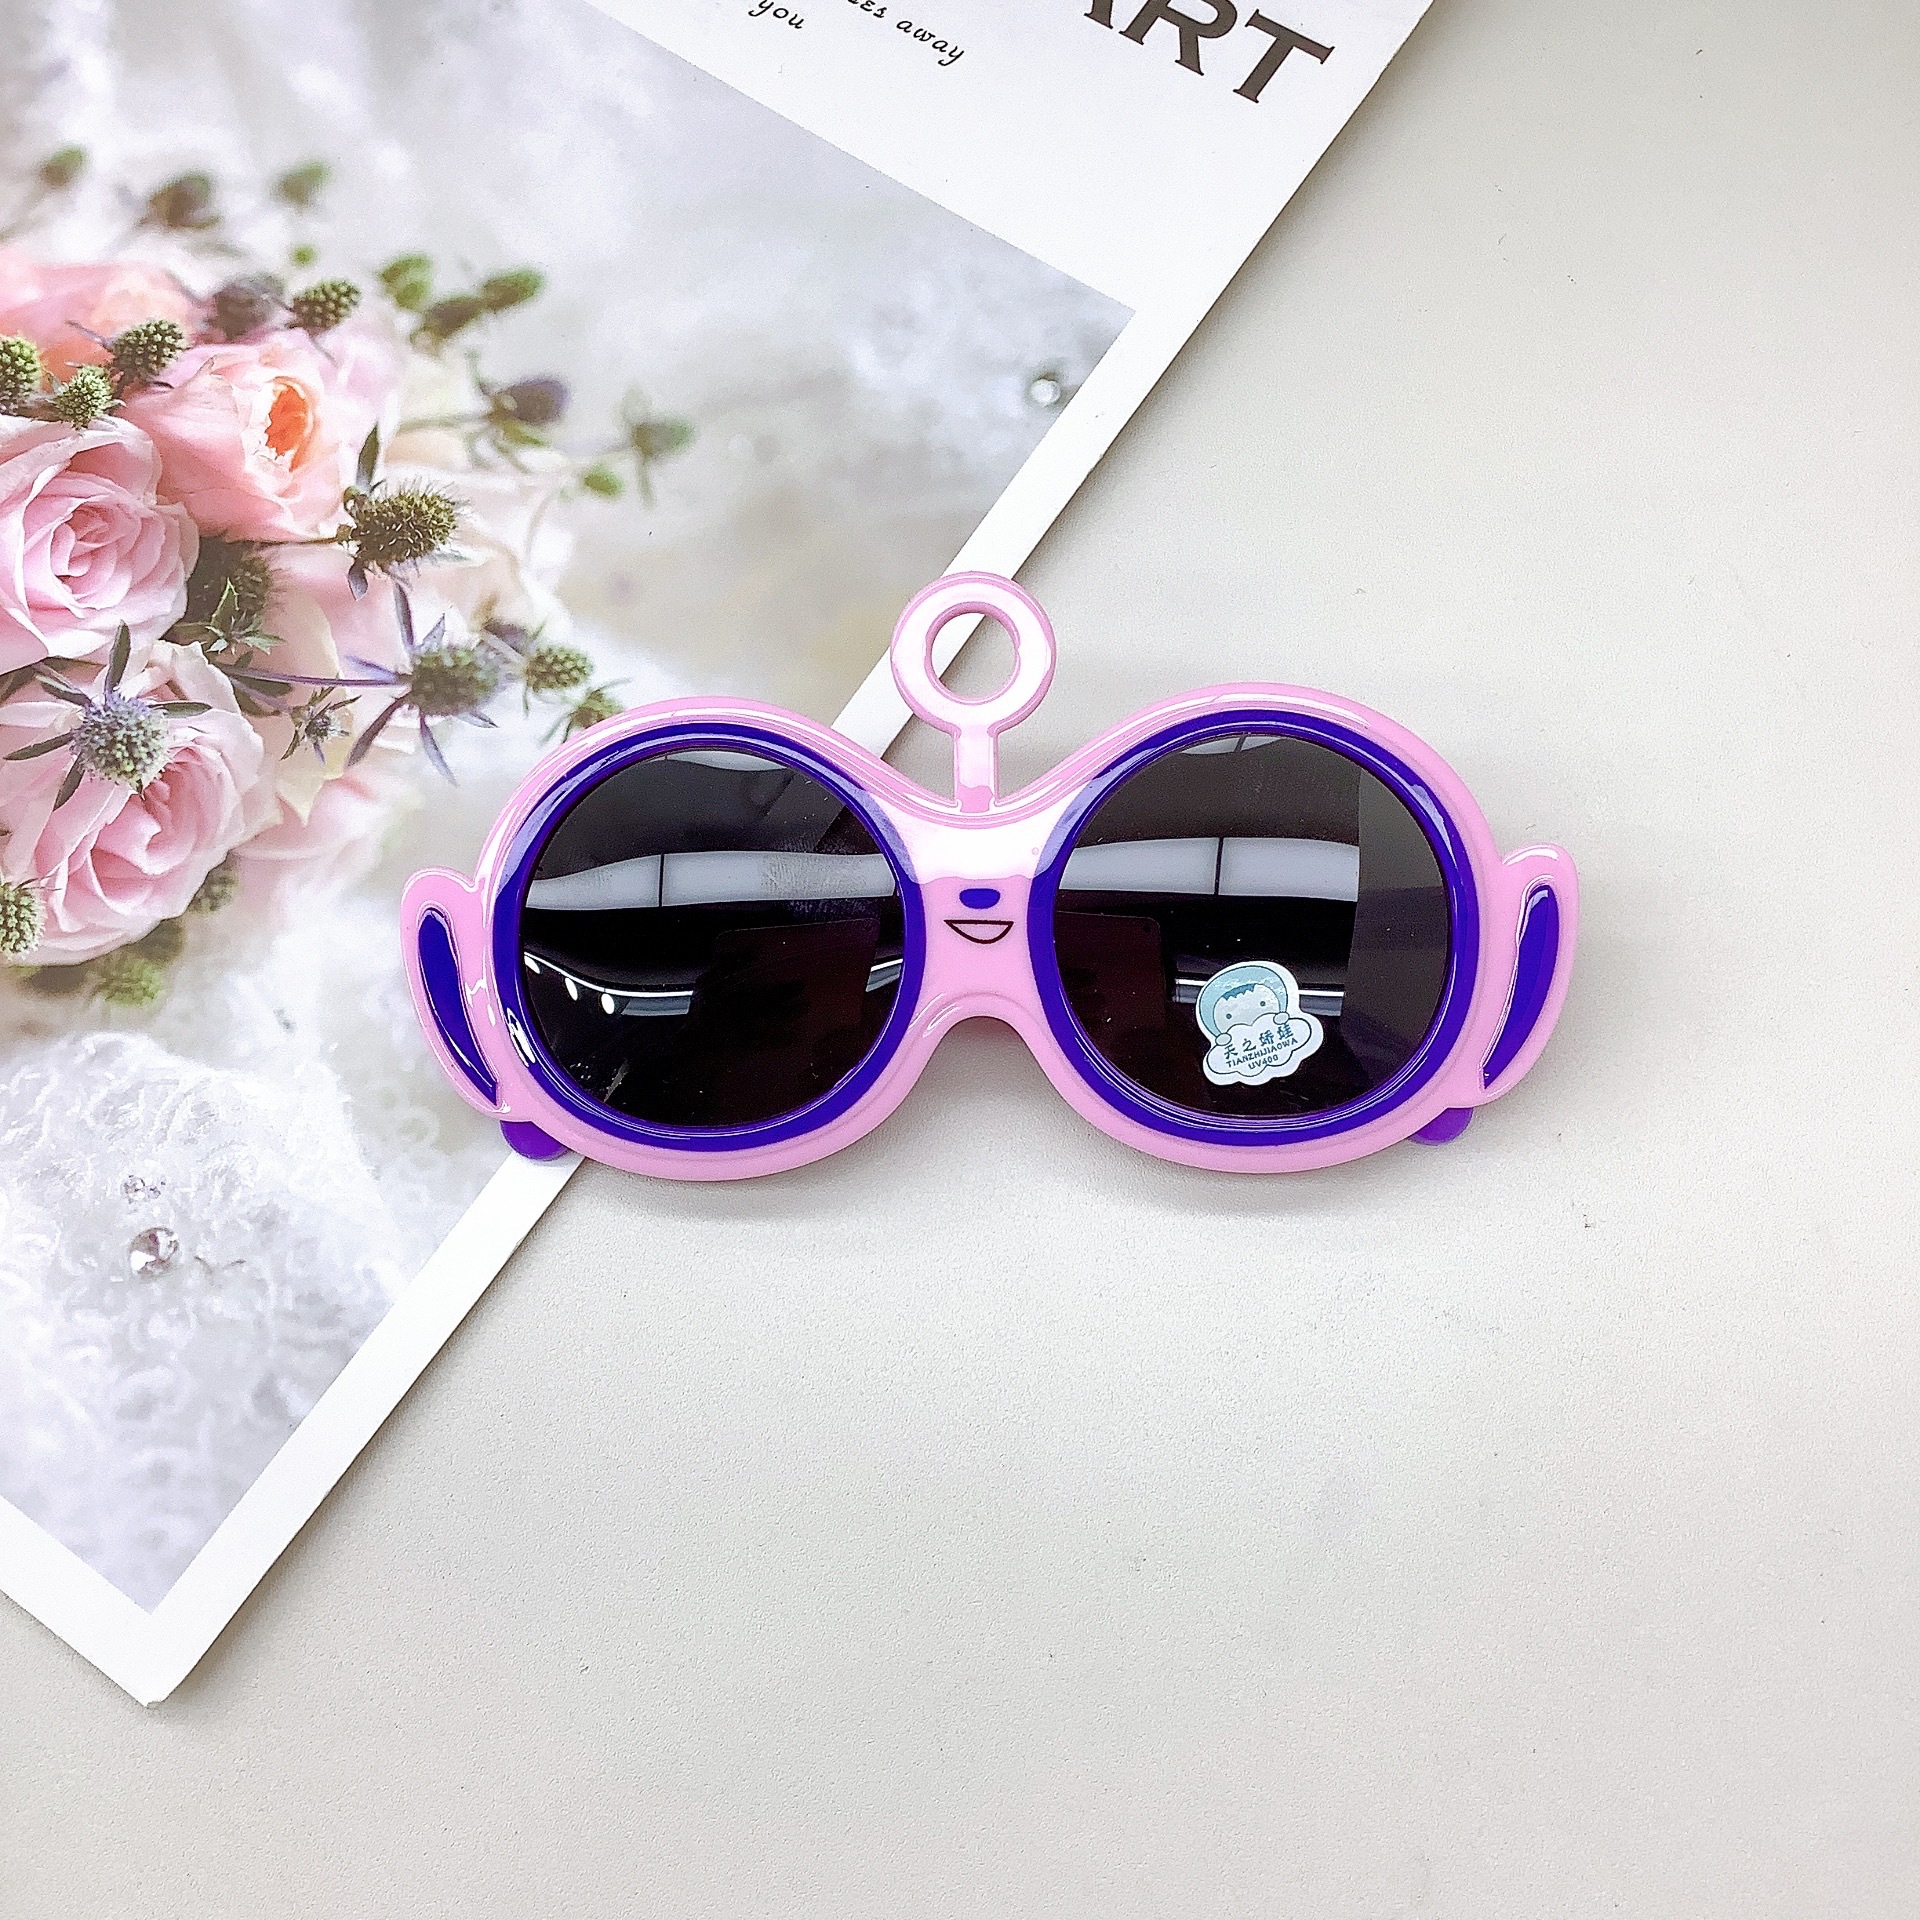 Fashion Silicone Polarized Kids Sunglasses Sun Protection Uv Protection Girl Cute Cartoon Sunglasses